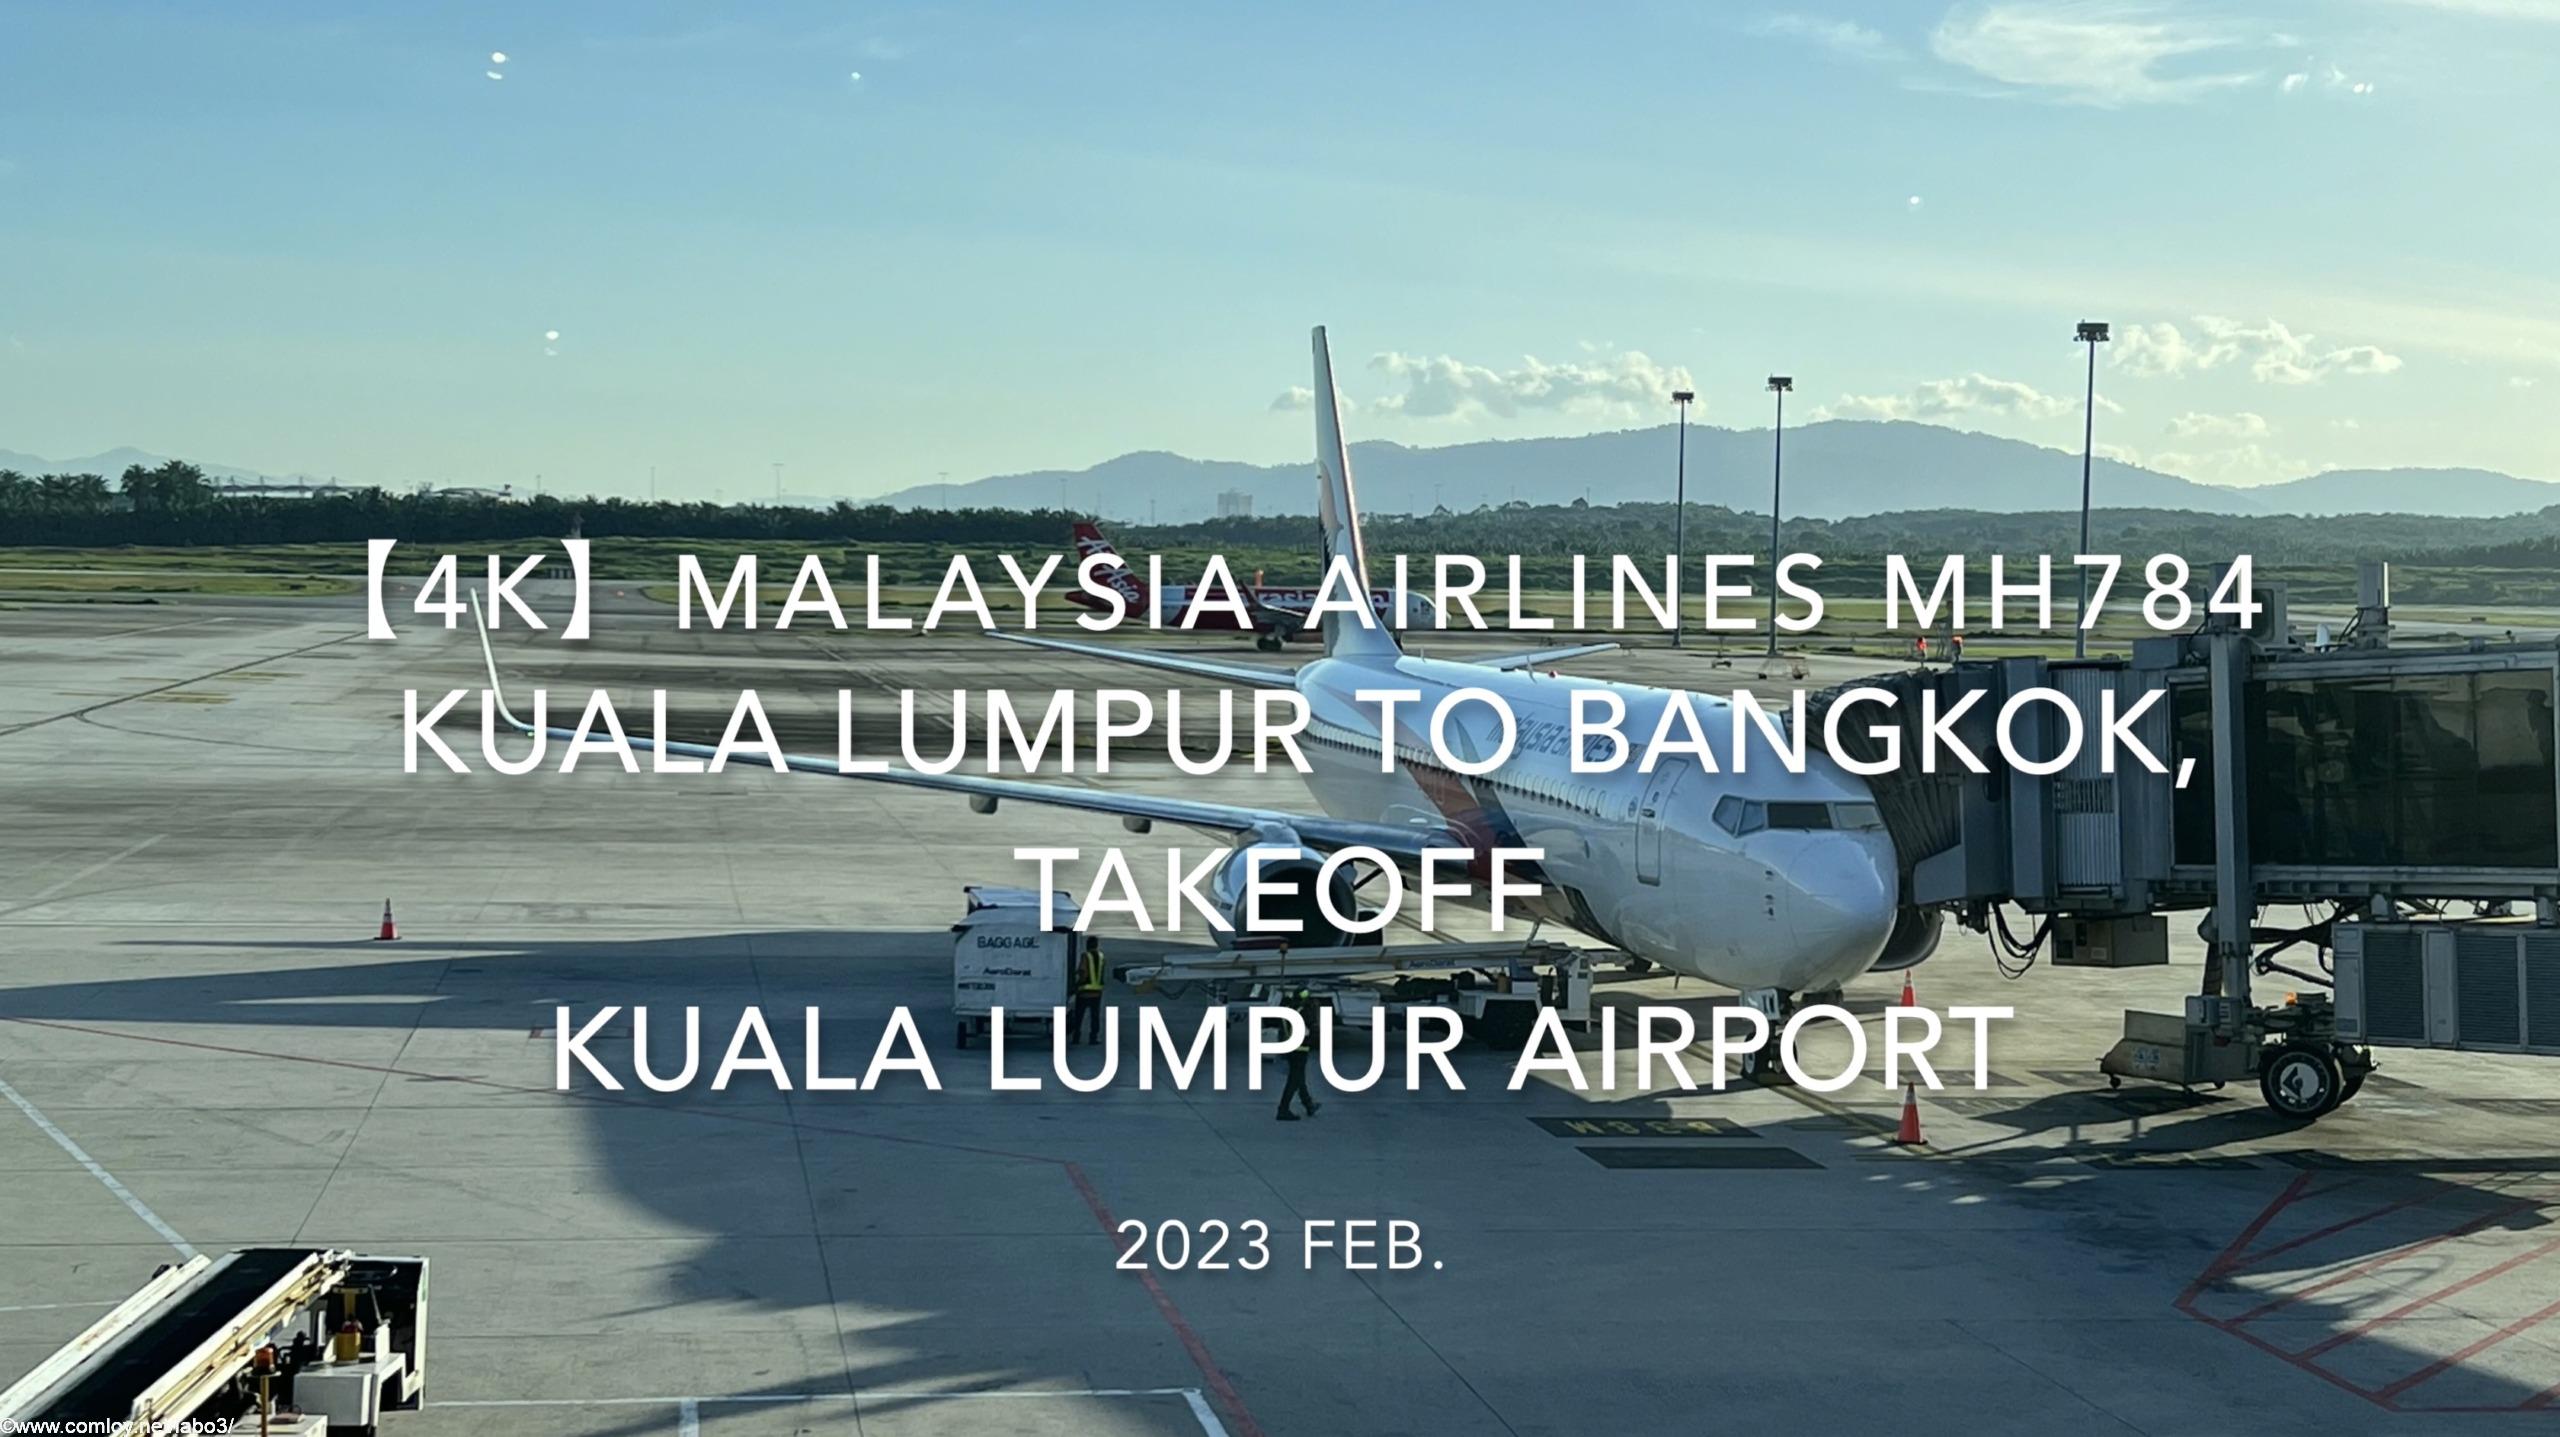 【機内から離着陸映像 4K】2023 Feb. Malaysia Airlines MH784 Kuala Lumpur to BANGKOK,Takeoff Kuala Lumpur Airport マレーシア航空 クアラルンプール - バンコク クアラルンプール空港離陸